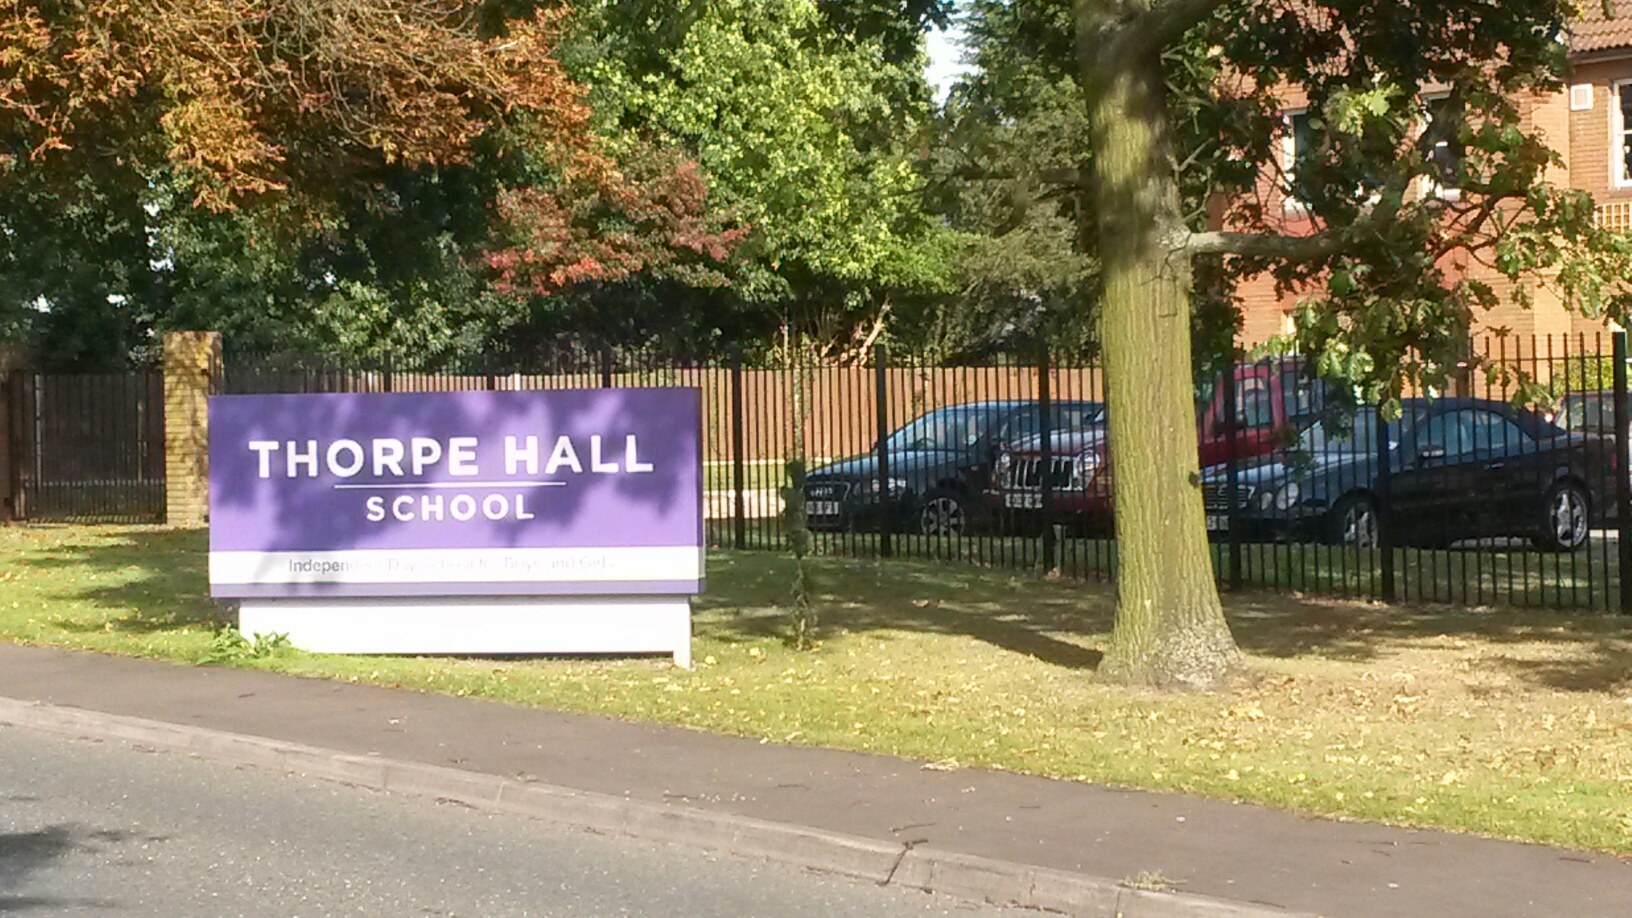 Thorpe Hall School